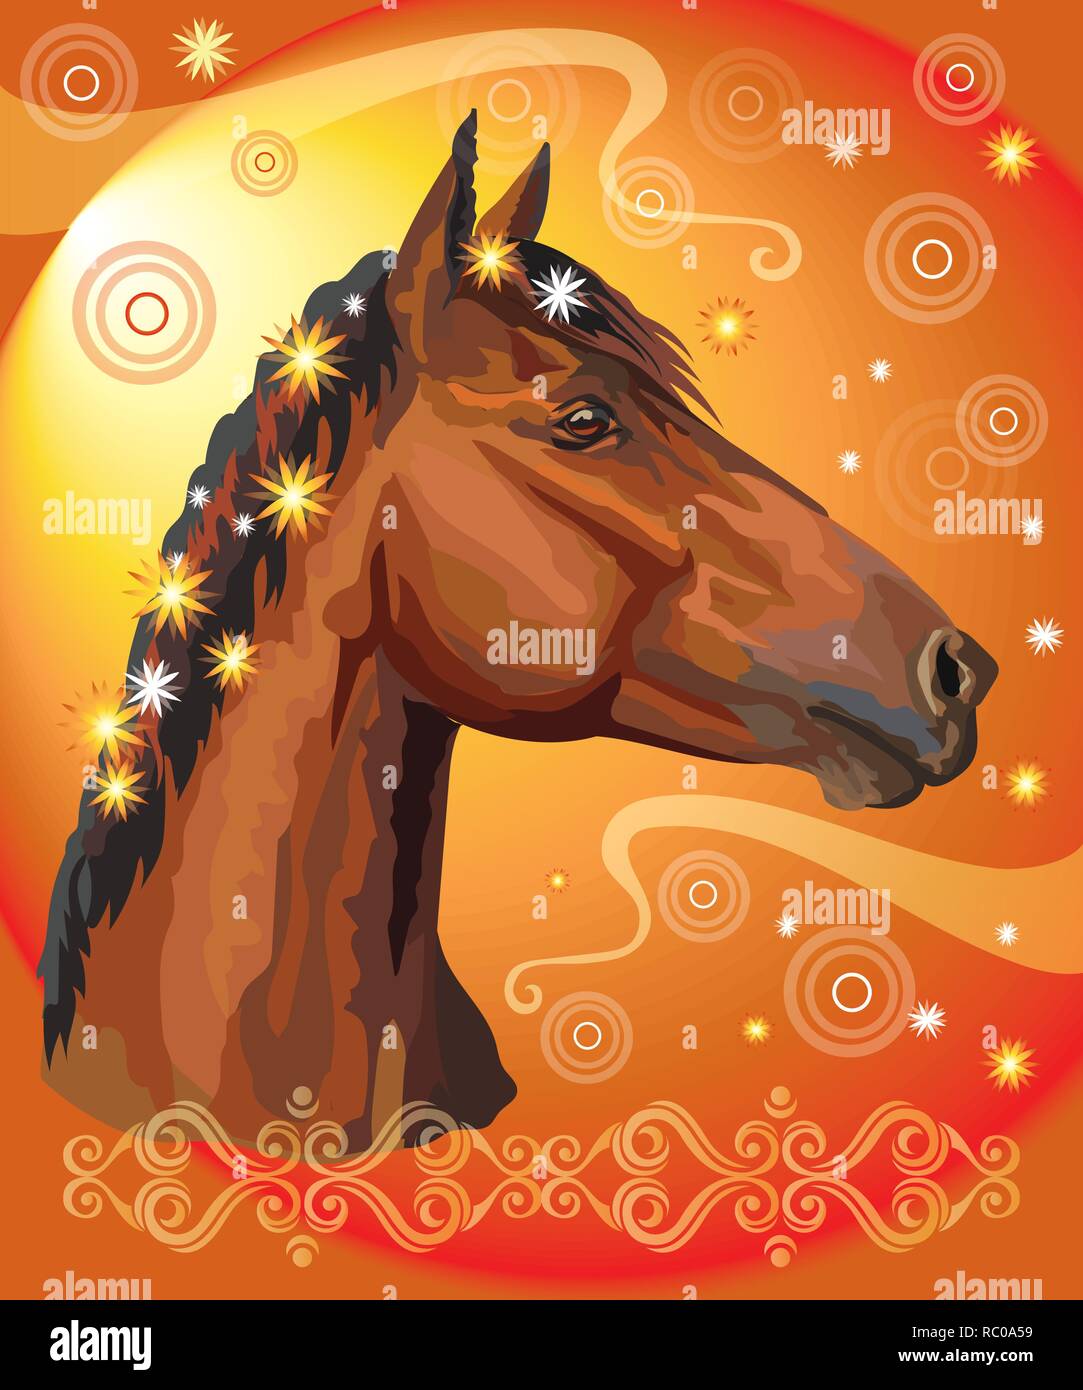 Vektor bunten Illustrationen. Portrait von Bay Horse mit verschiedenen Blumen, die in die mähne auf orange gradient Hintergrund mit dekorativem Ornament isoliert und Stock Vektor